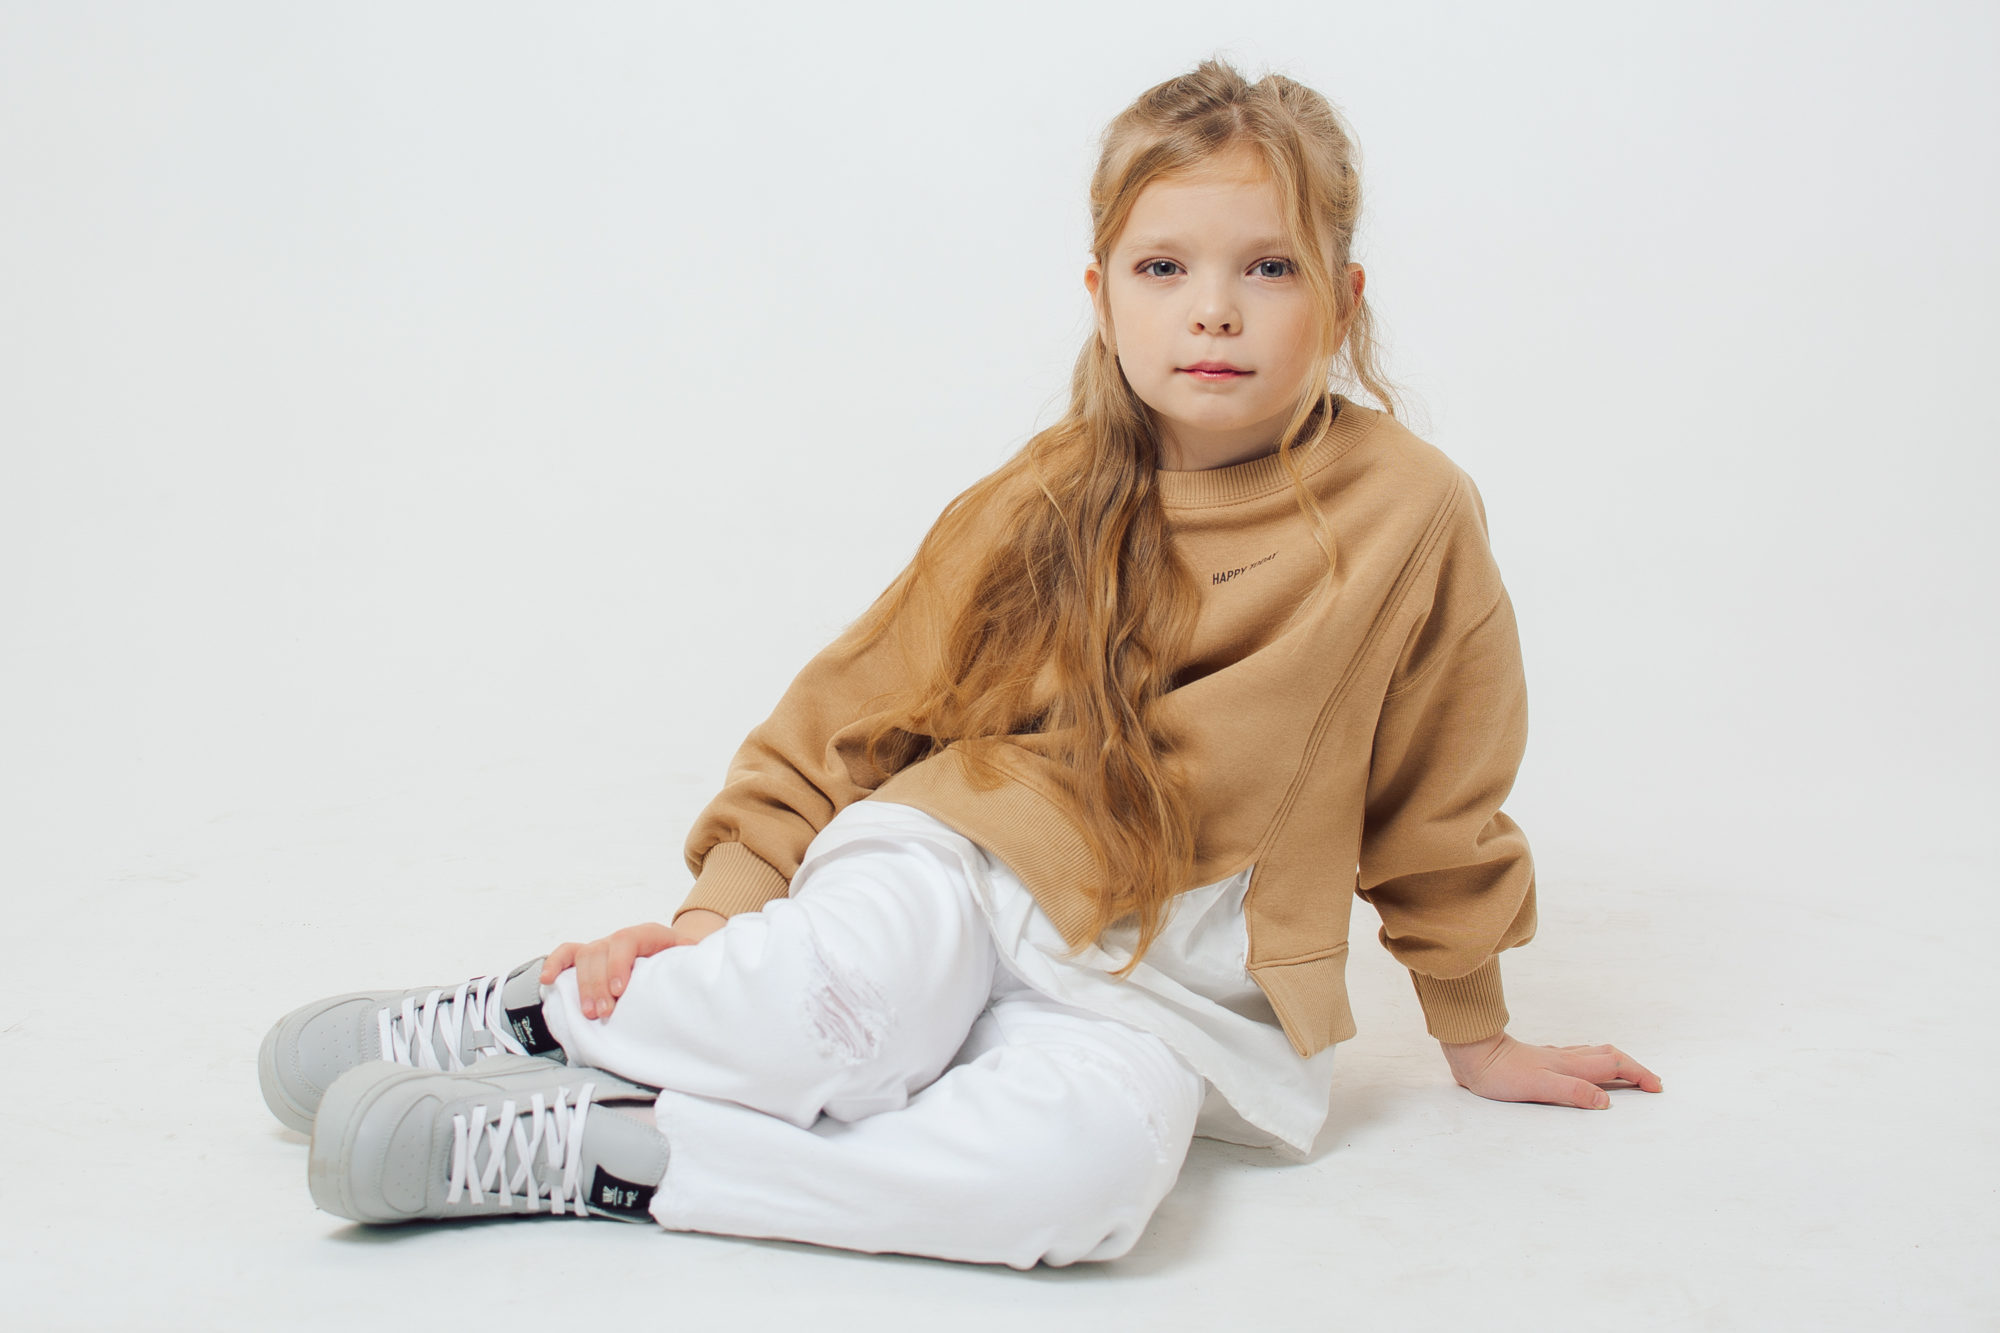 Детское модельное агентство в москве от 1 года отправить